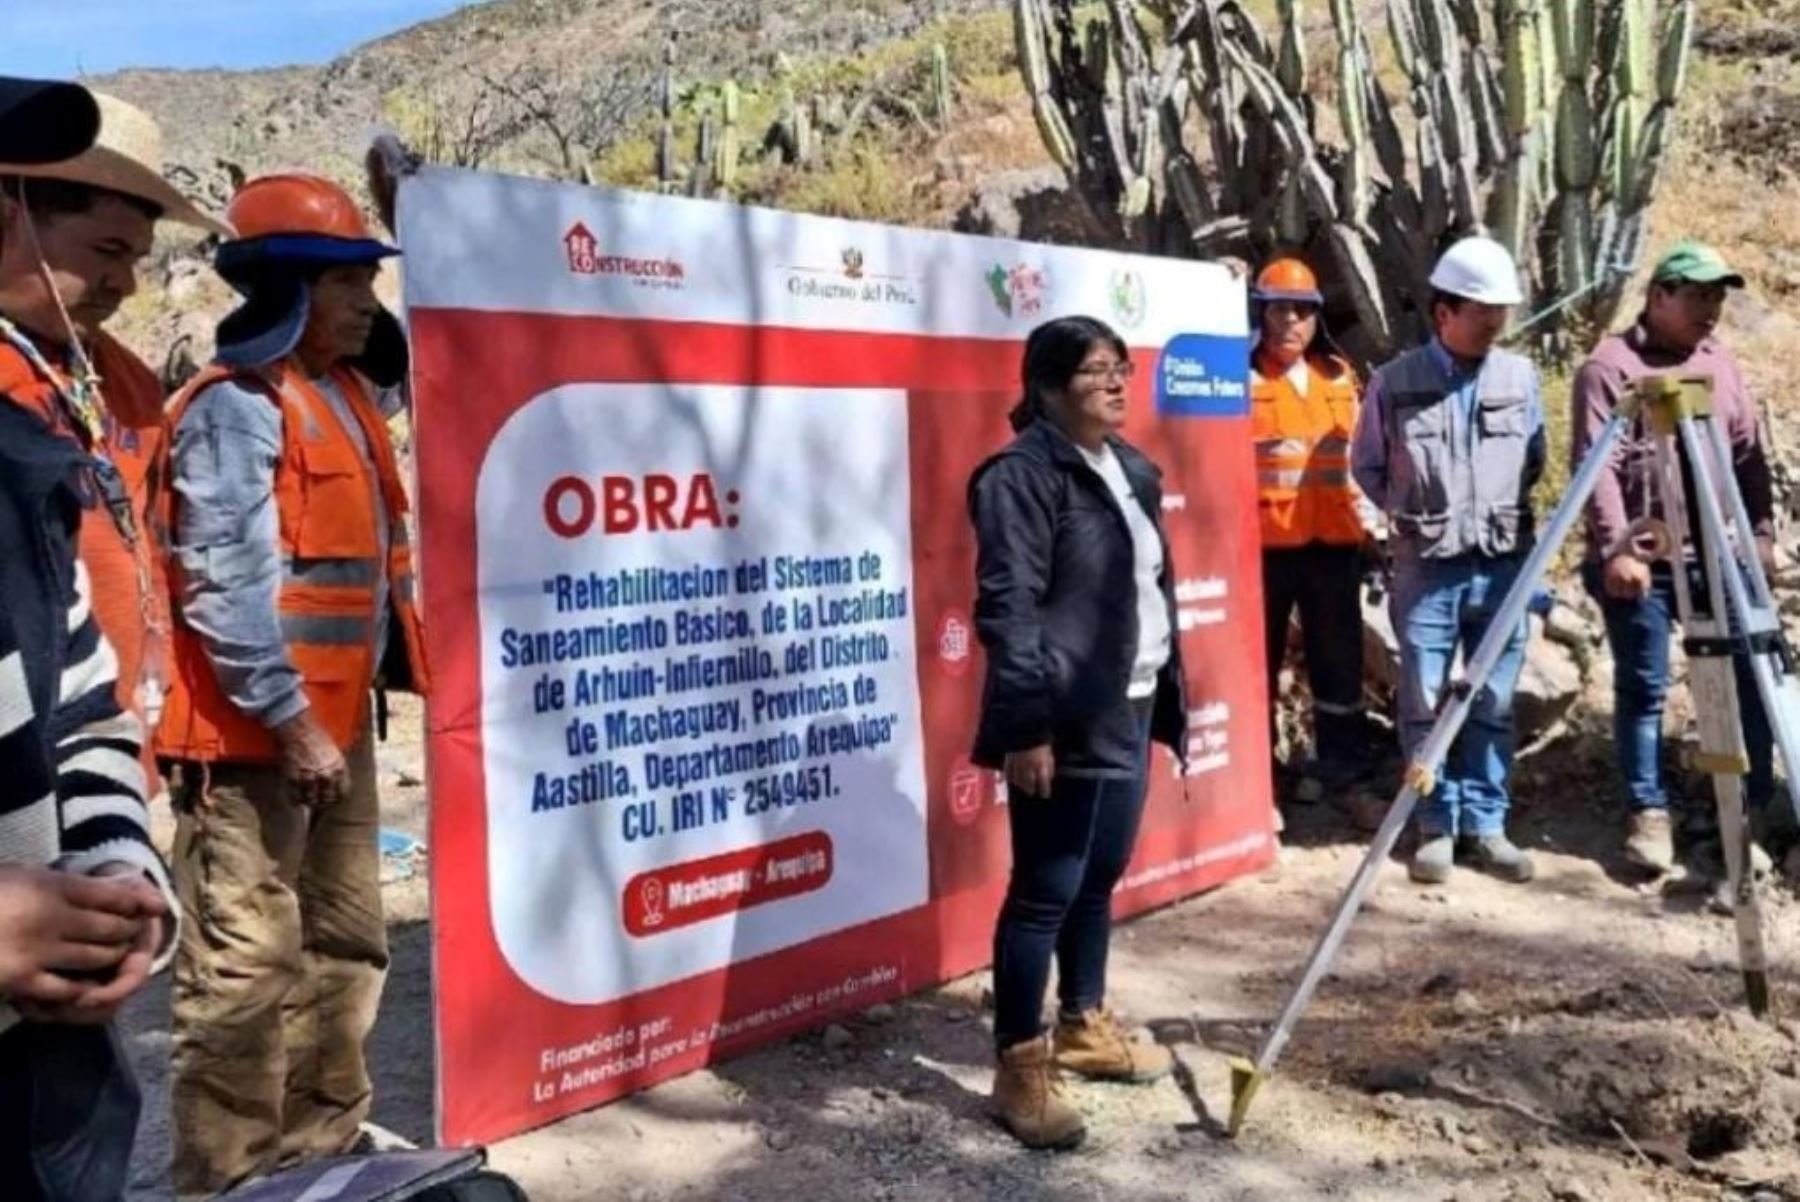 La obra está a cargo de la municipalidad distrital de Machaguay (Arequipa) y recibió el financiamiento de S/ 291,000. Foto: ARCC